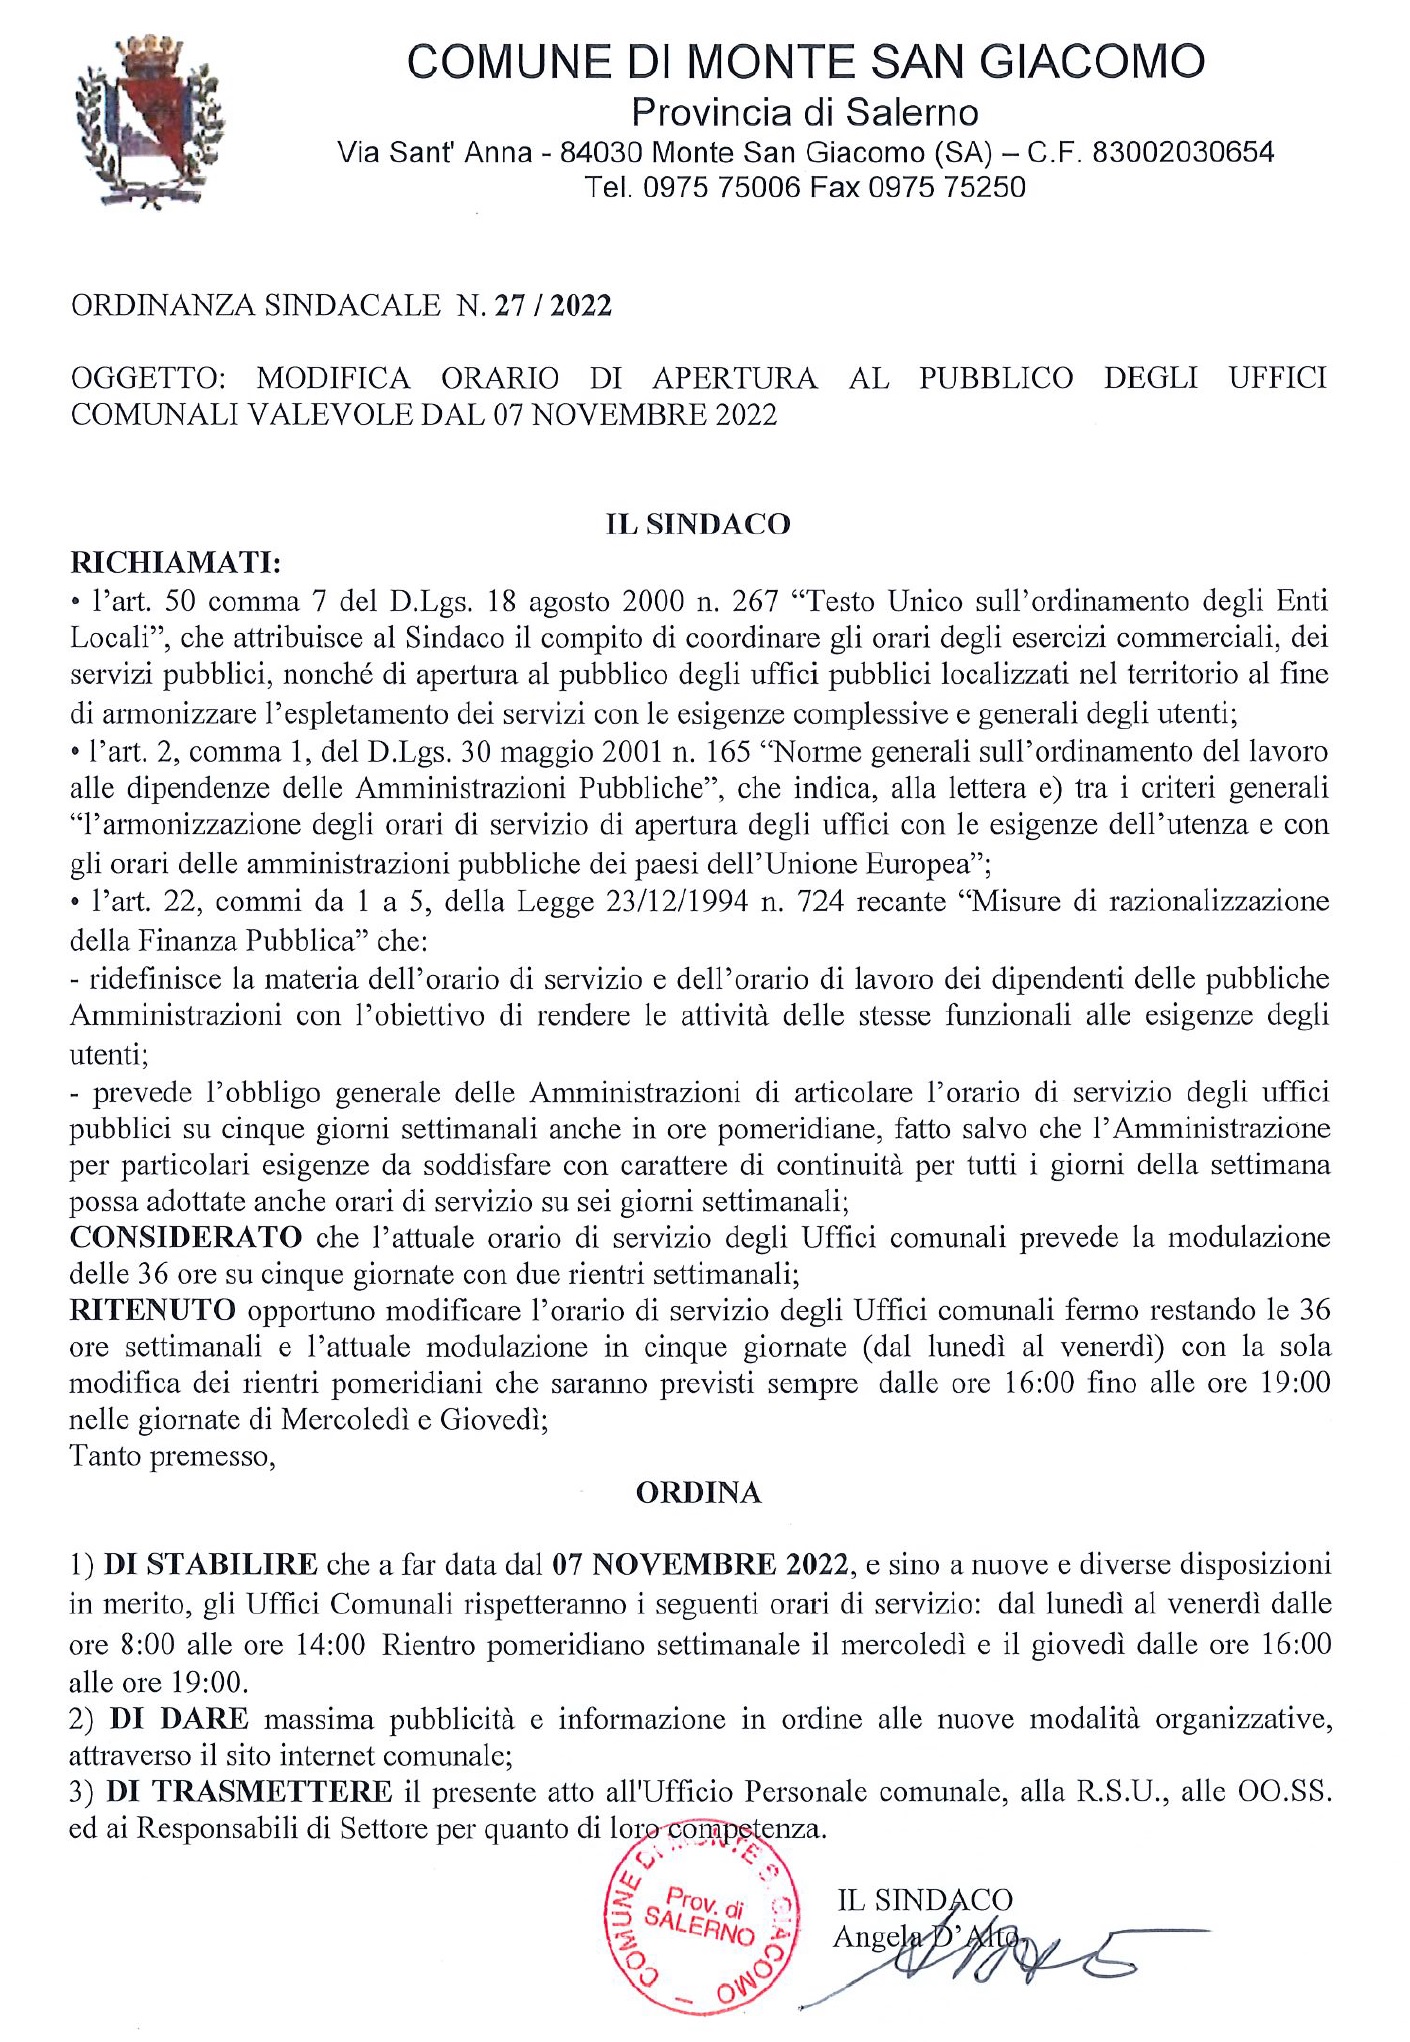 Ordinanza n. 27-2022 - Apertura Uffici Comunali.